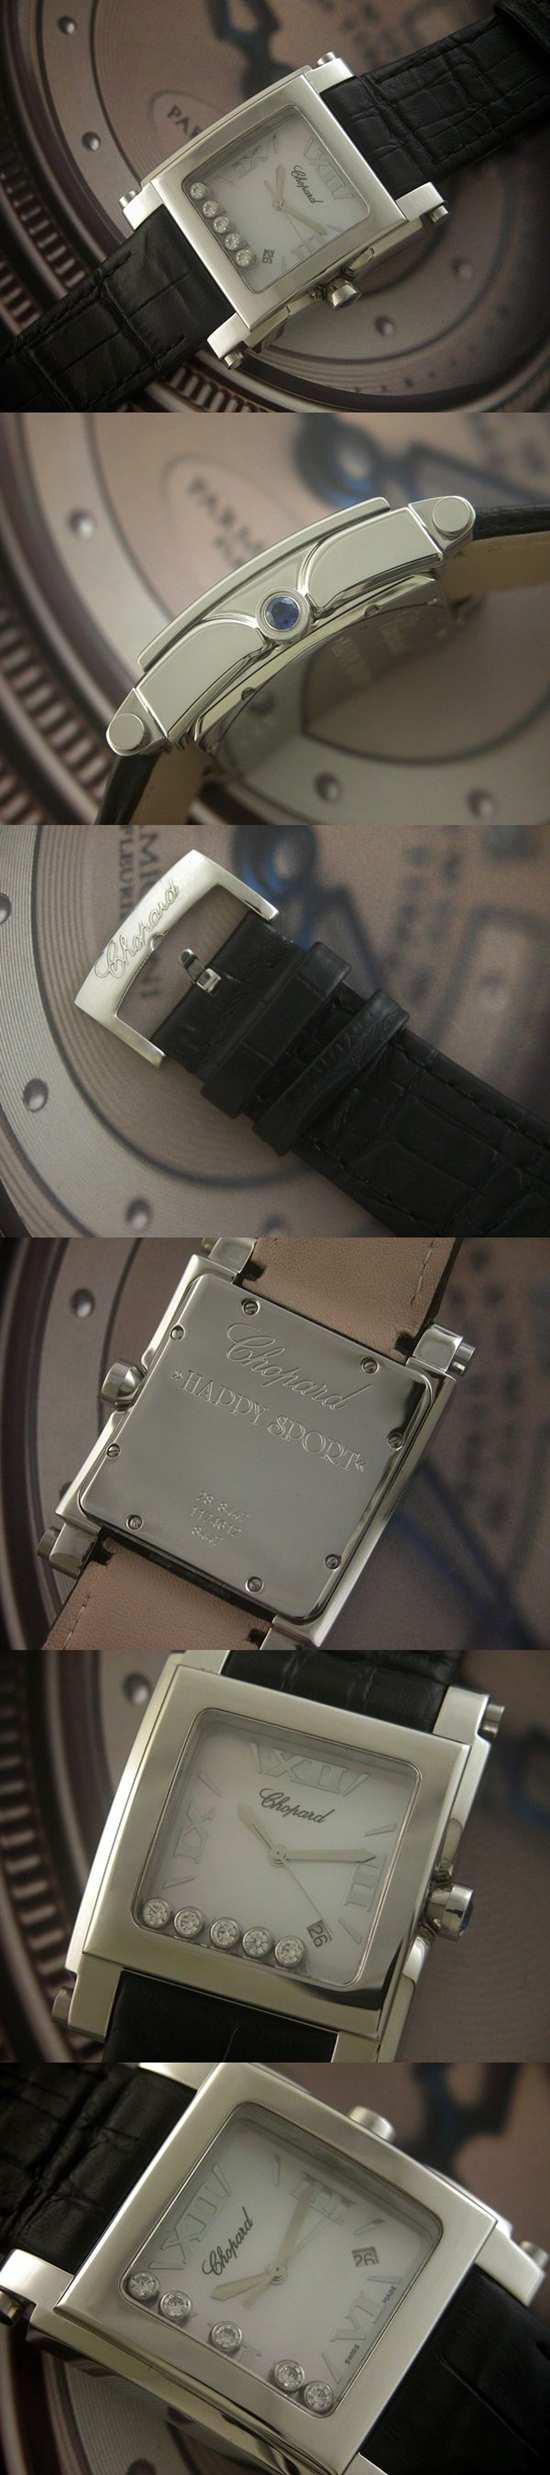 おしゃれなブランド時計がショパール-CHOPARD-ラ ストラーダ-278495-3001-ae  男/女性用腕時計を提供します.